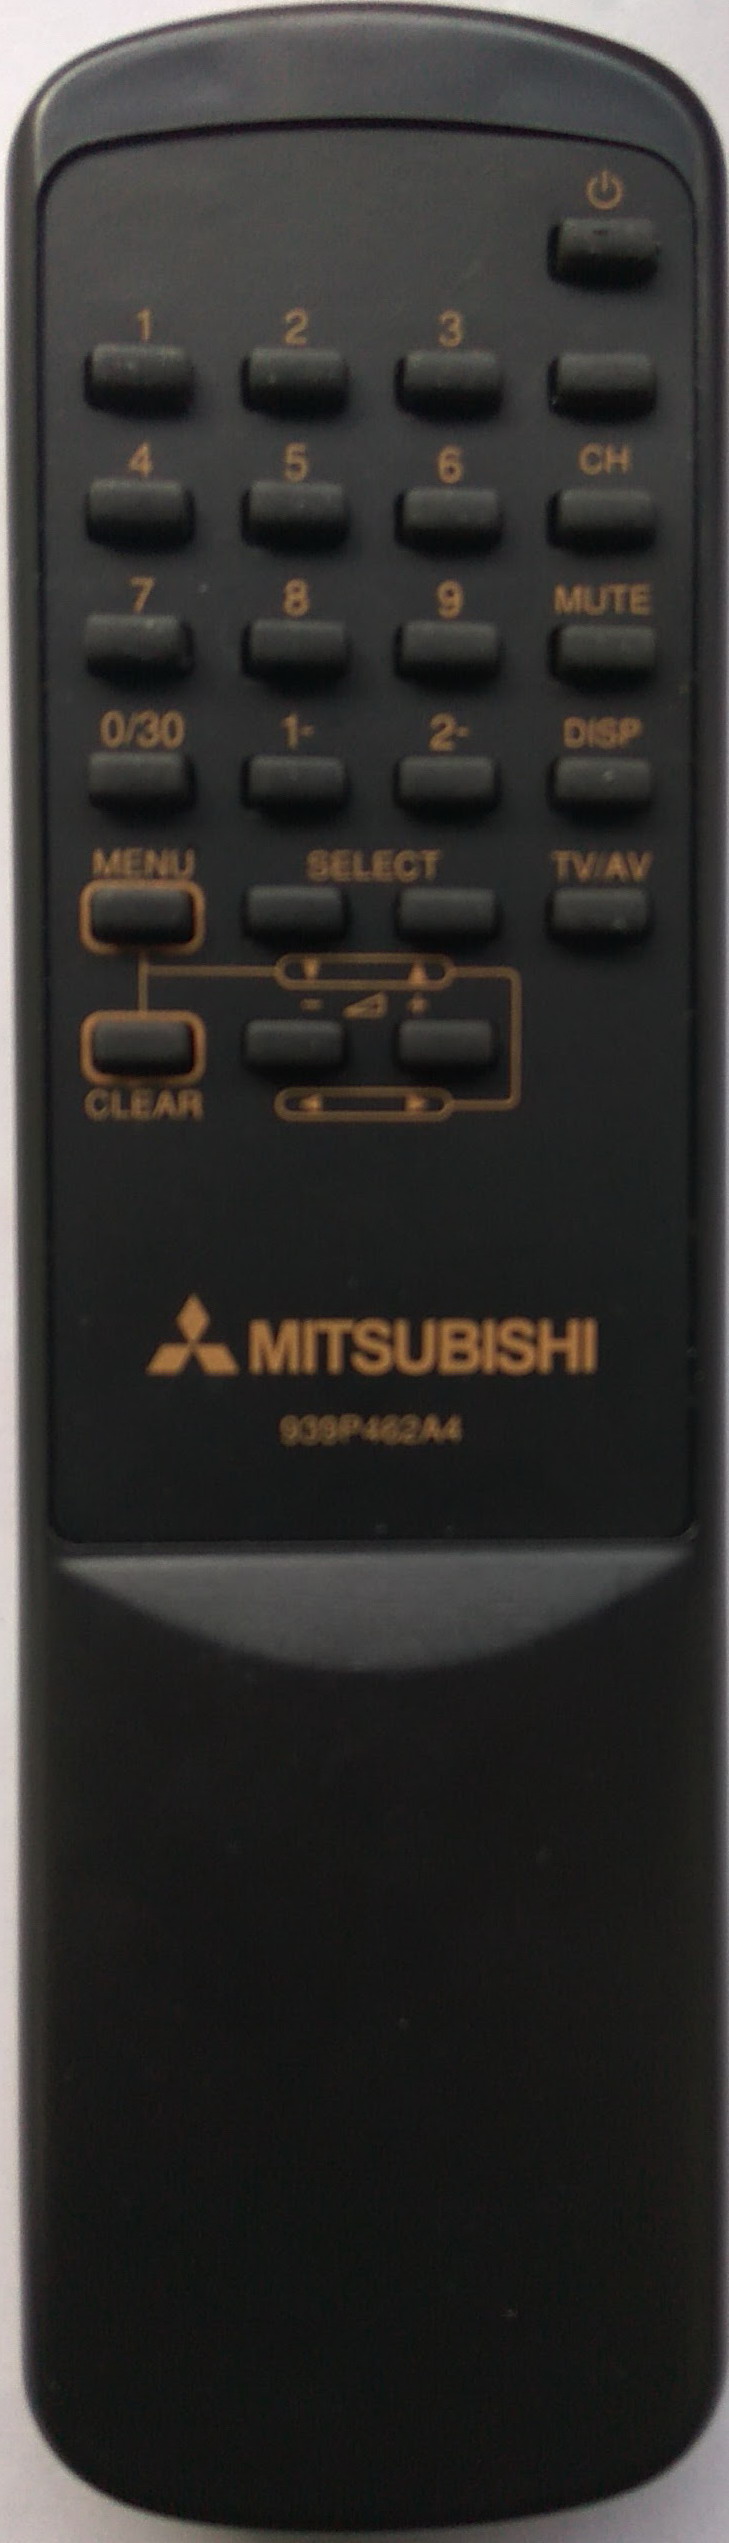 MITSUBISHI 938P462A4.jpg